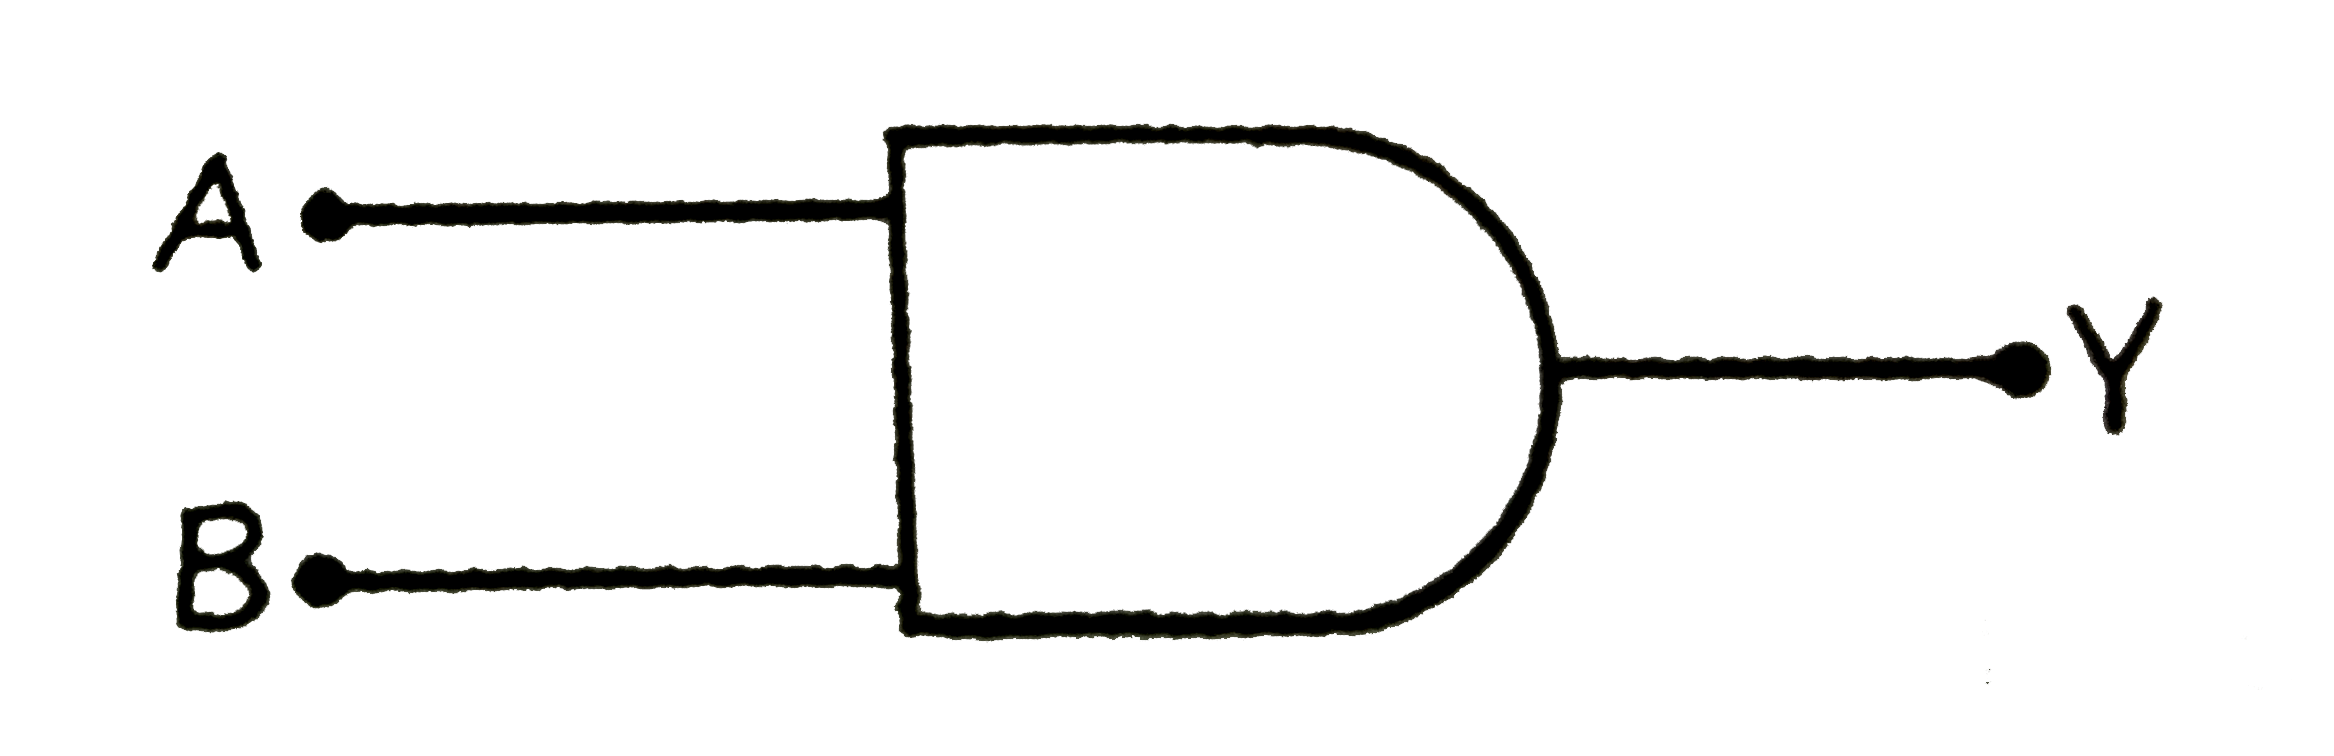 चित्र में प्रदर्शित लॉजिक गेट का संकेत चित्र दिया गया है ।      (i) लॉजिक  गेट का नाम तथा सत्यता सारणी लीखिए ।    (ii) A  व B को दिए गए निवेशी  सिंग्नलो  का निर्गत सिंग्नल प्रदर्शित कीजिए ।